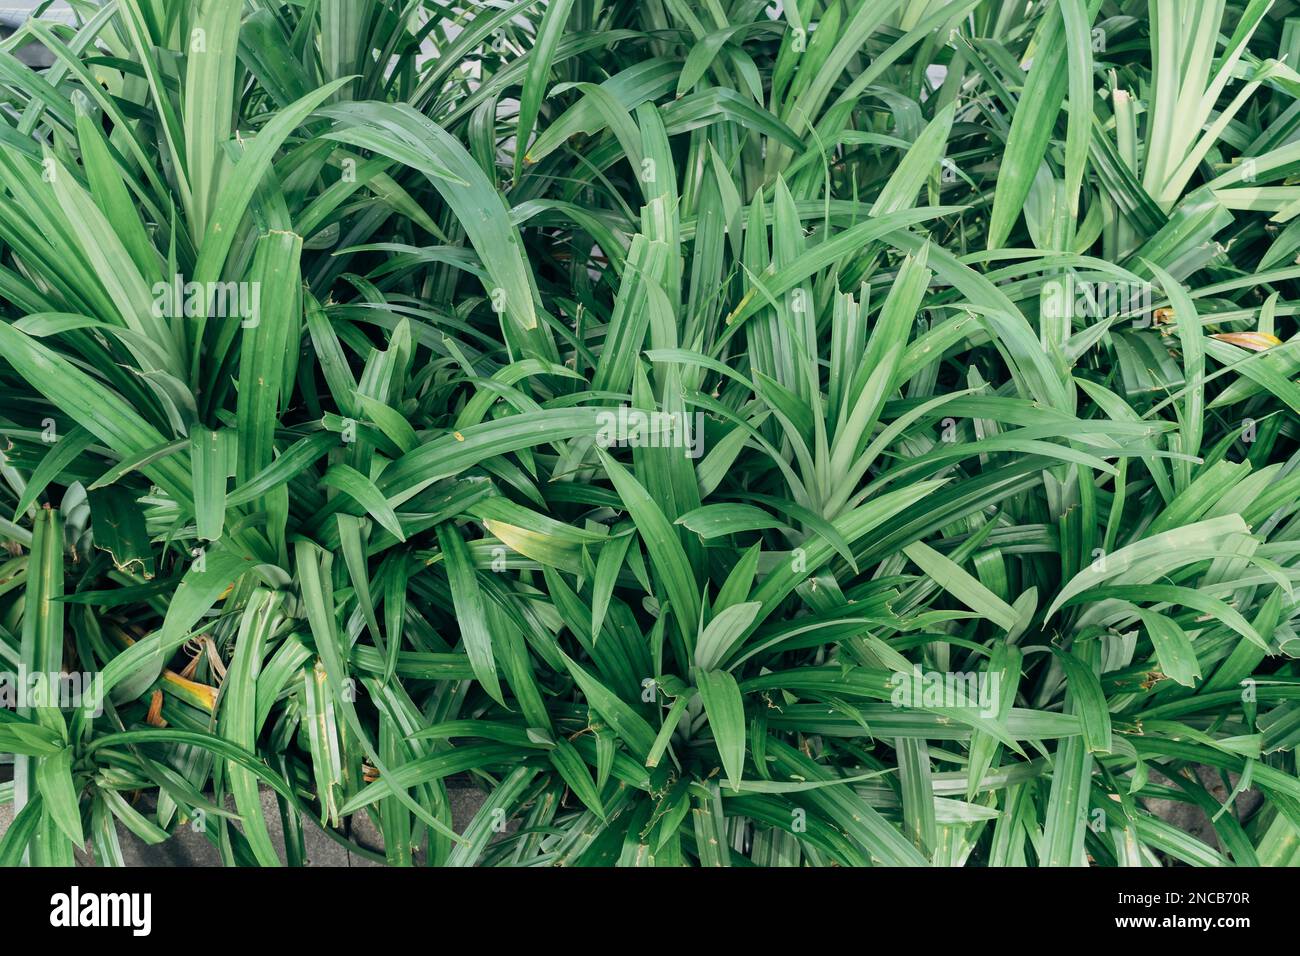 Feuilles de Pandan wangi (Pandanus amaryllifolius) plantes qui poussent habituellement en Indonésie et en Asie du Sud-est pour des ingrédients supplémentaires dans la cuisine. Banque D'Images